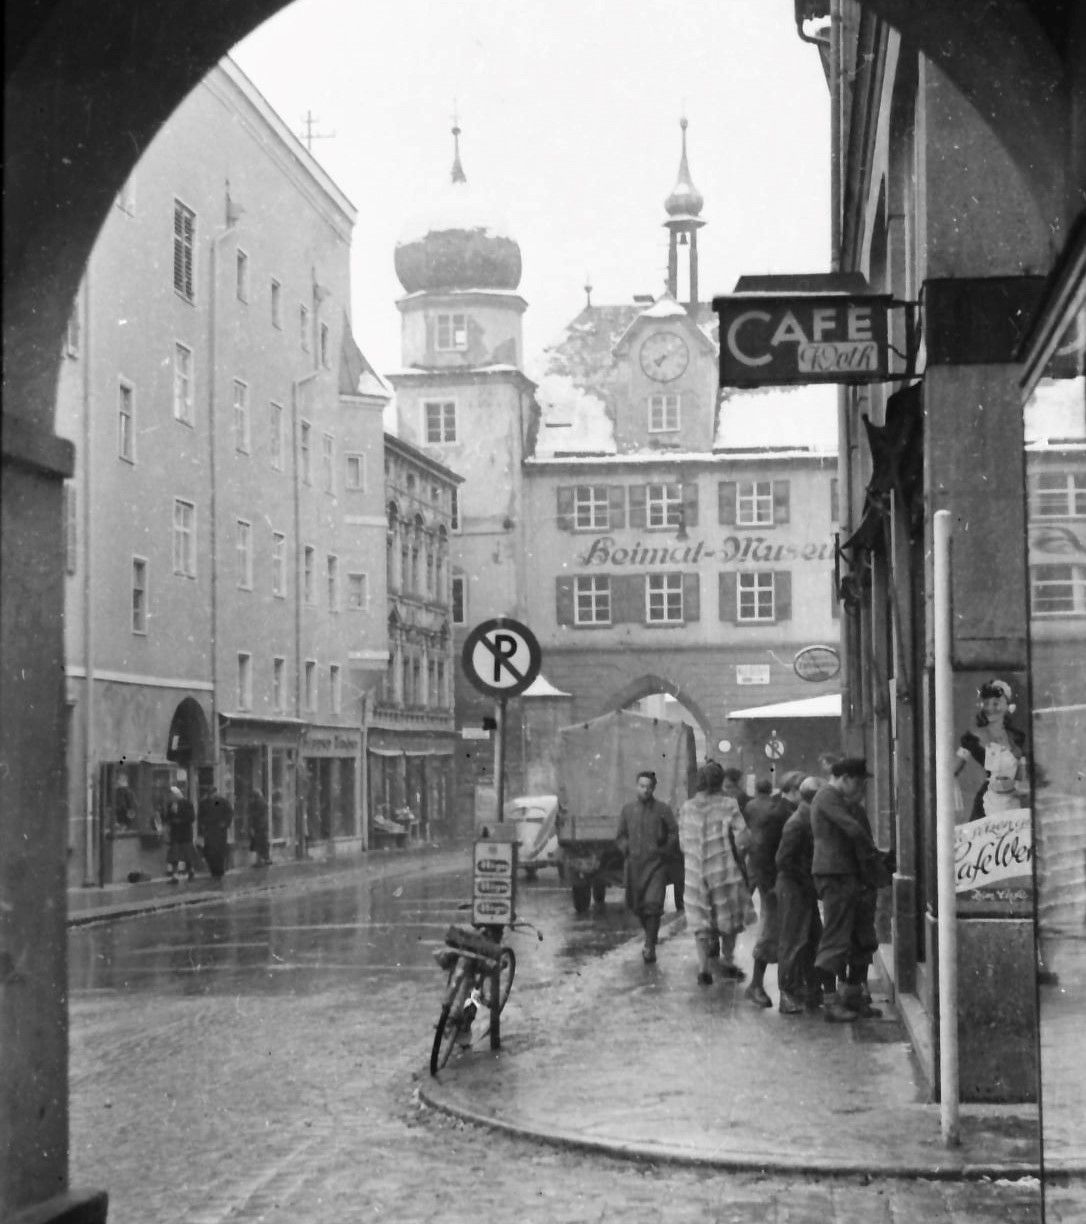 Historische Schwarz-Weiss-Aufnahme auf 1950. Darauf zu sehen das Mittertor in Rosenheim mit einigen Menschen in der damals typischen Kleidung